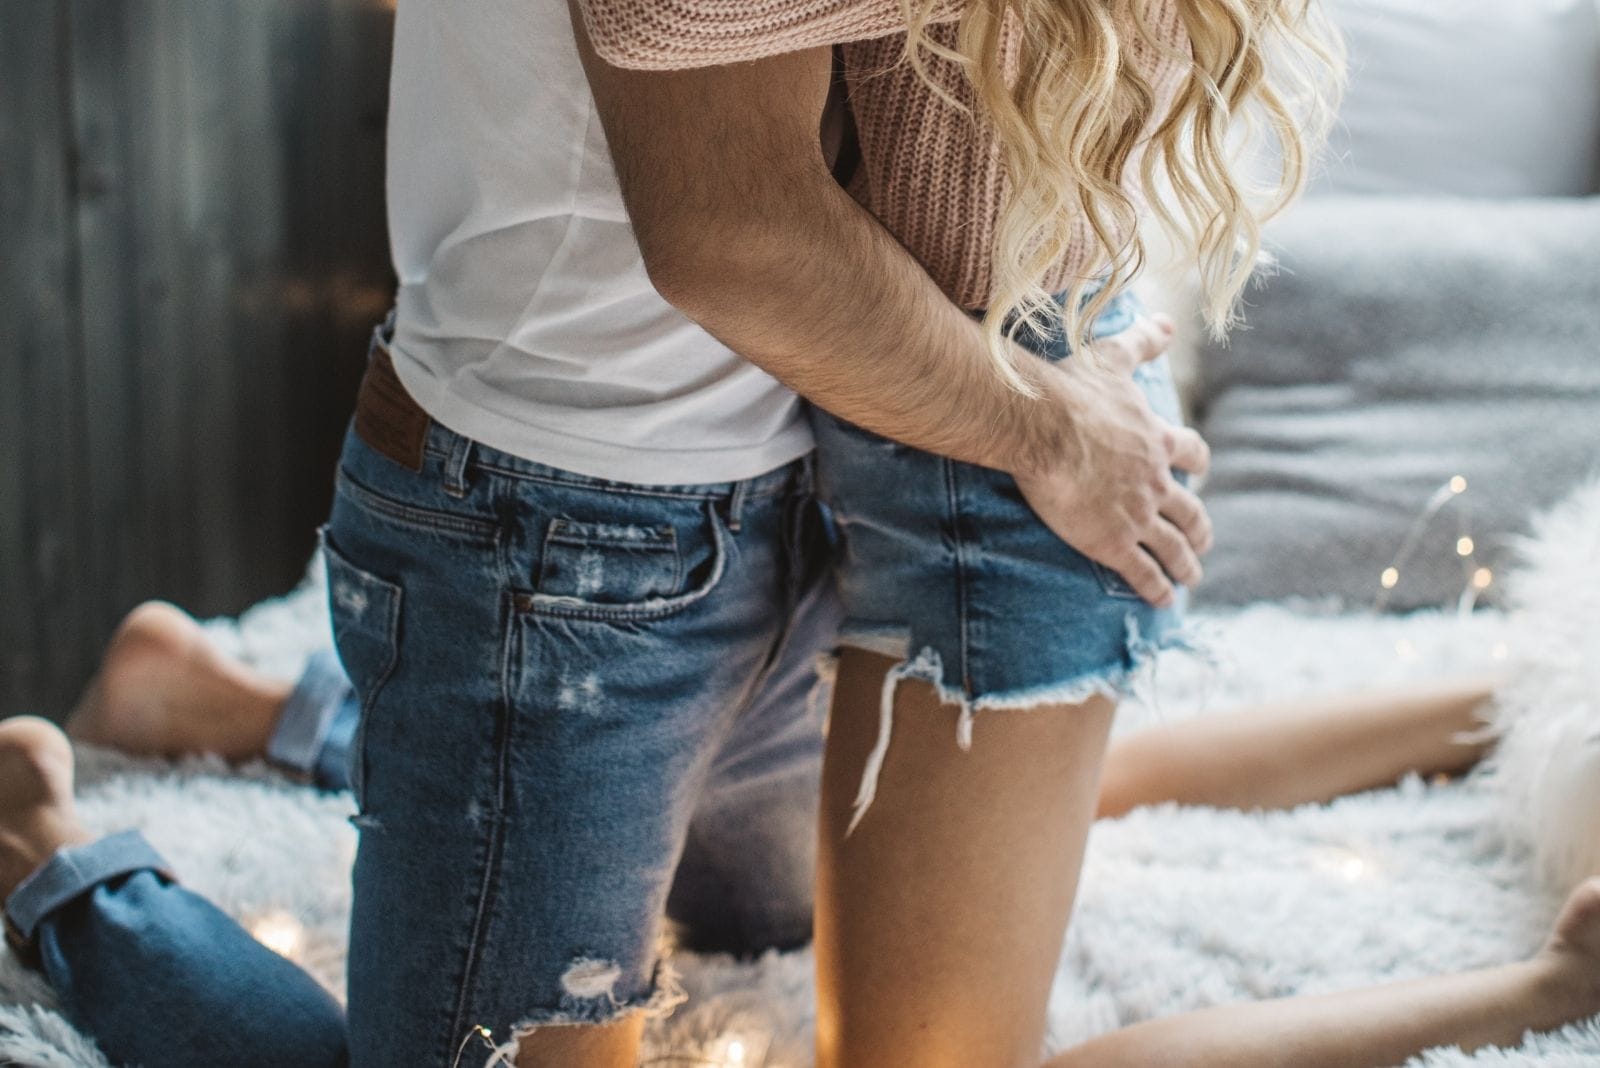 coppia romantica a letto che si bacia con la mano del ragazzo sulla tasca posteriore della donna